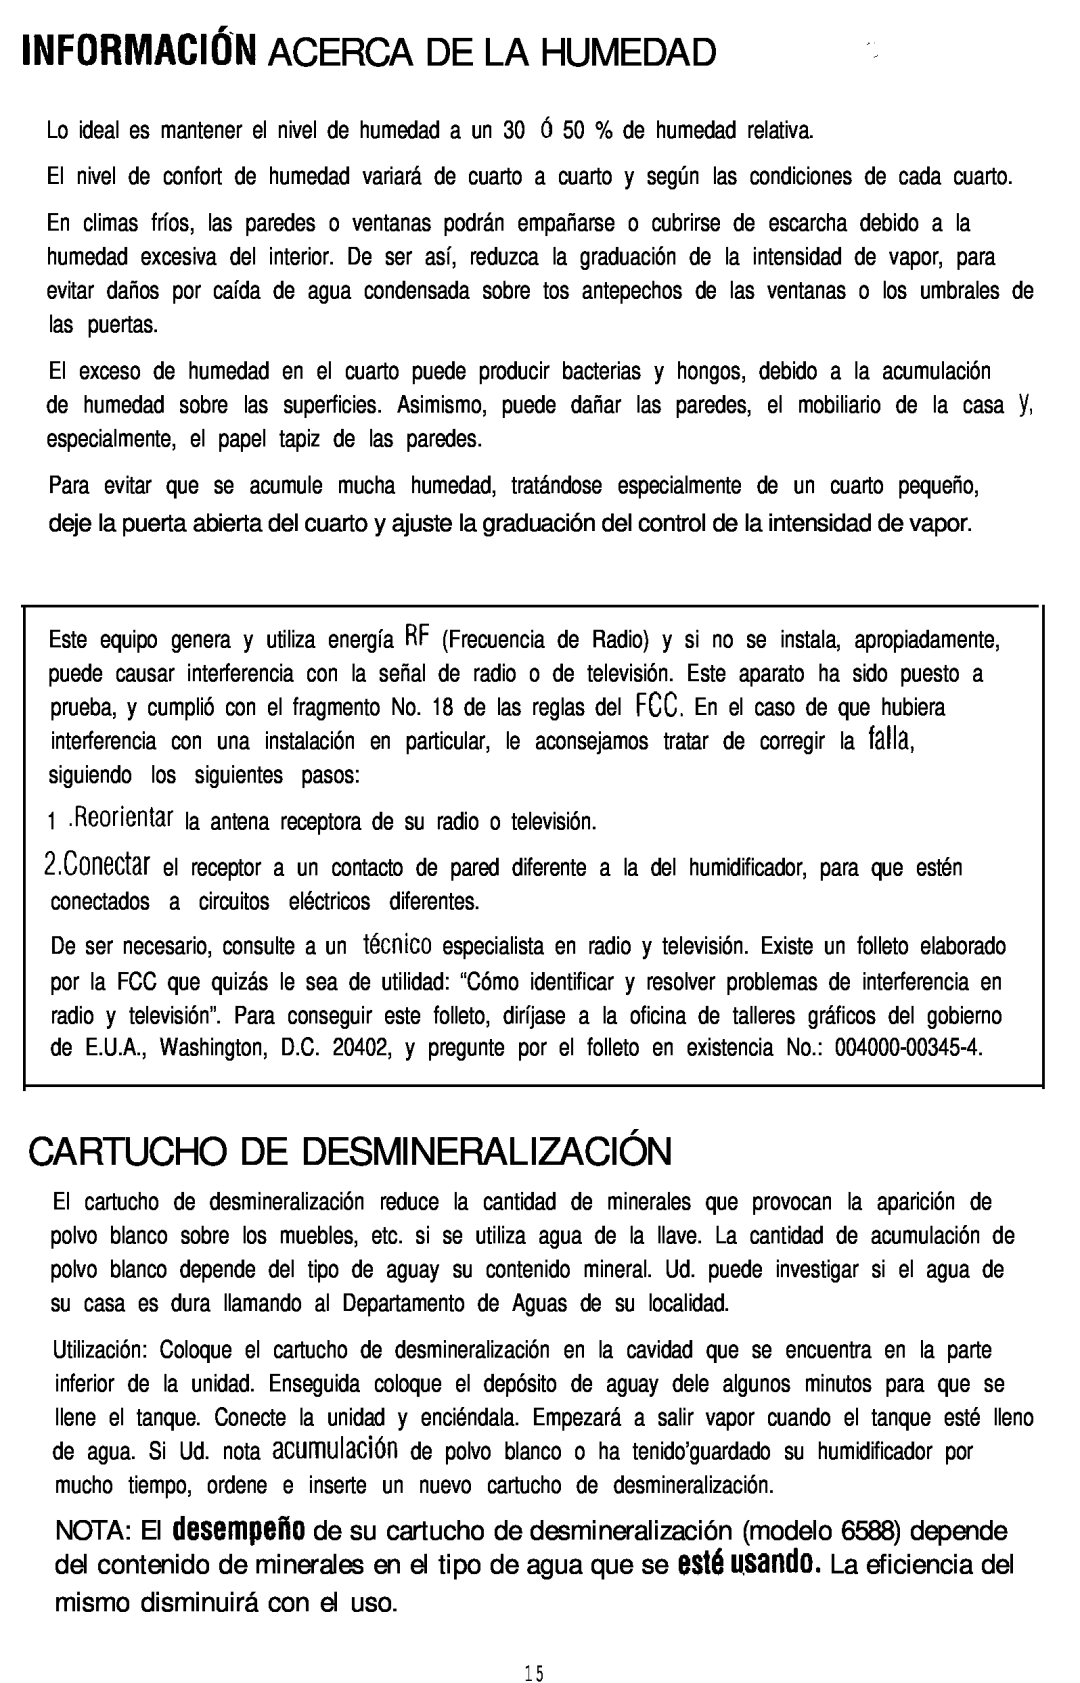 Sunbeam 696 Informació‘N Acerca De La Humedad, Cartucho De Desmineralización, mismo disminuirá con el uso 